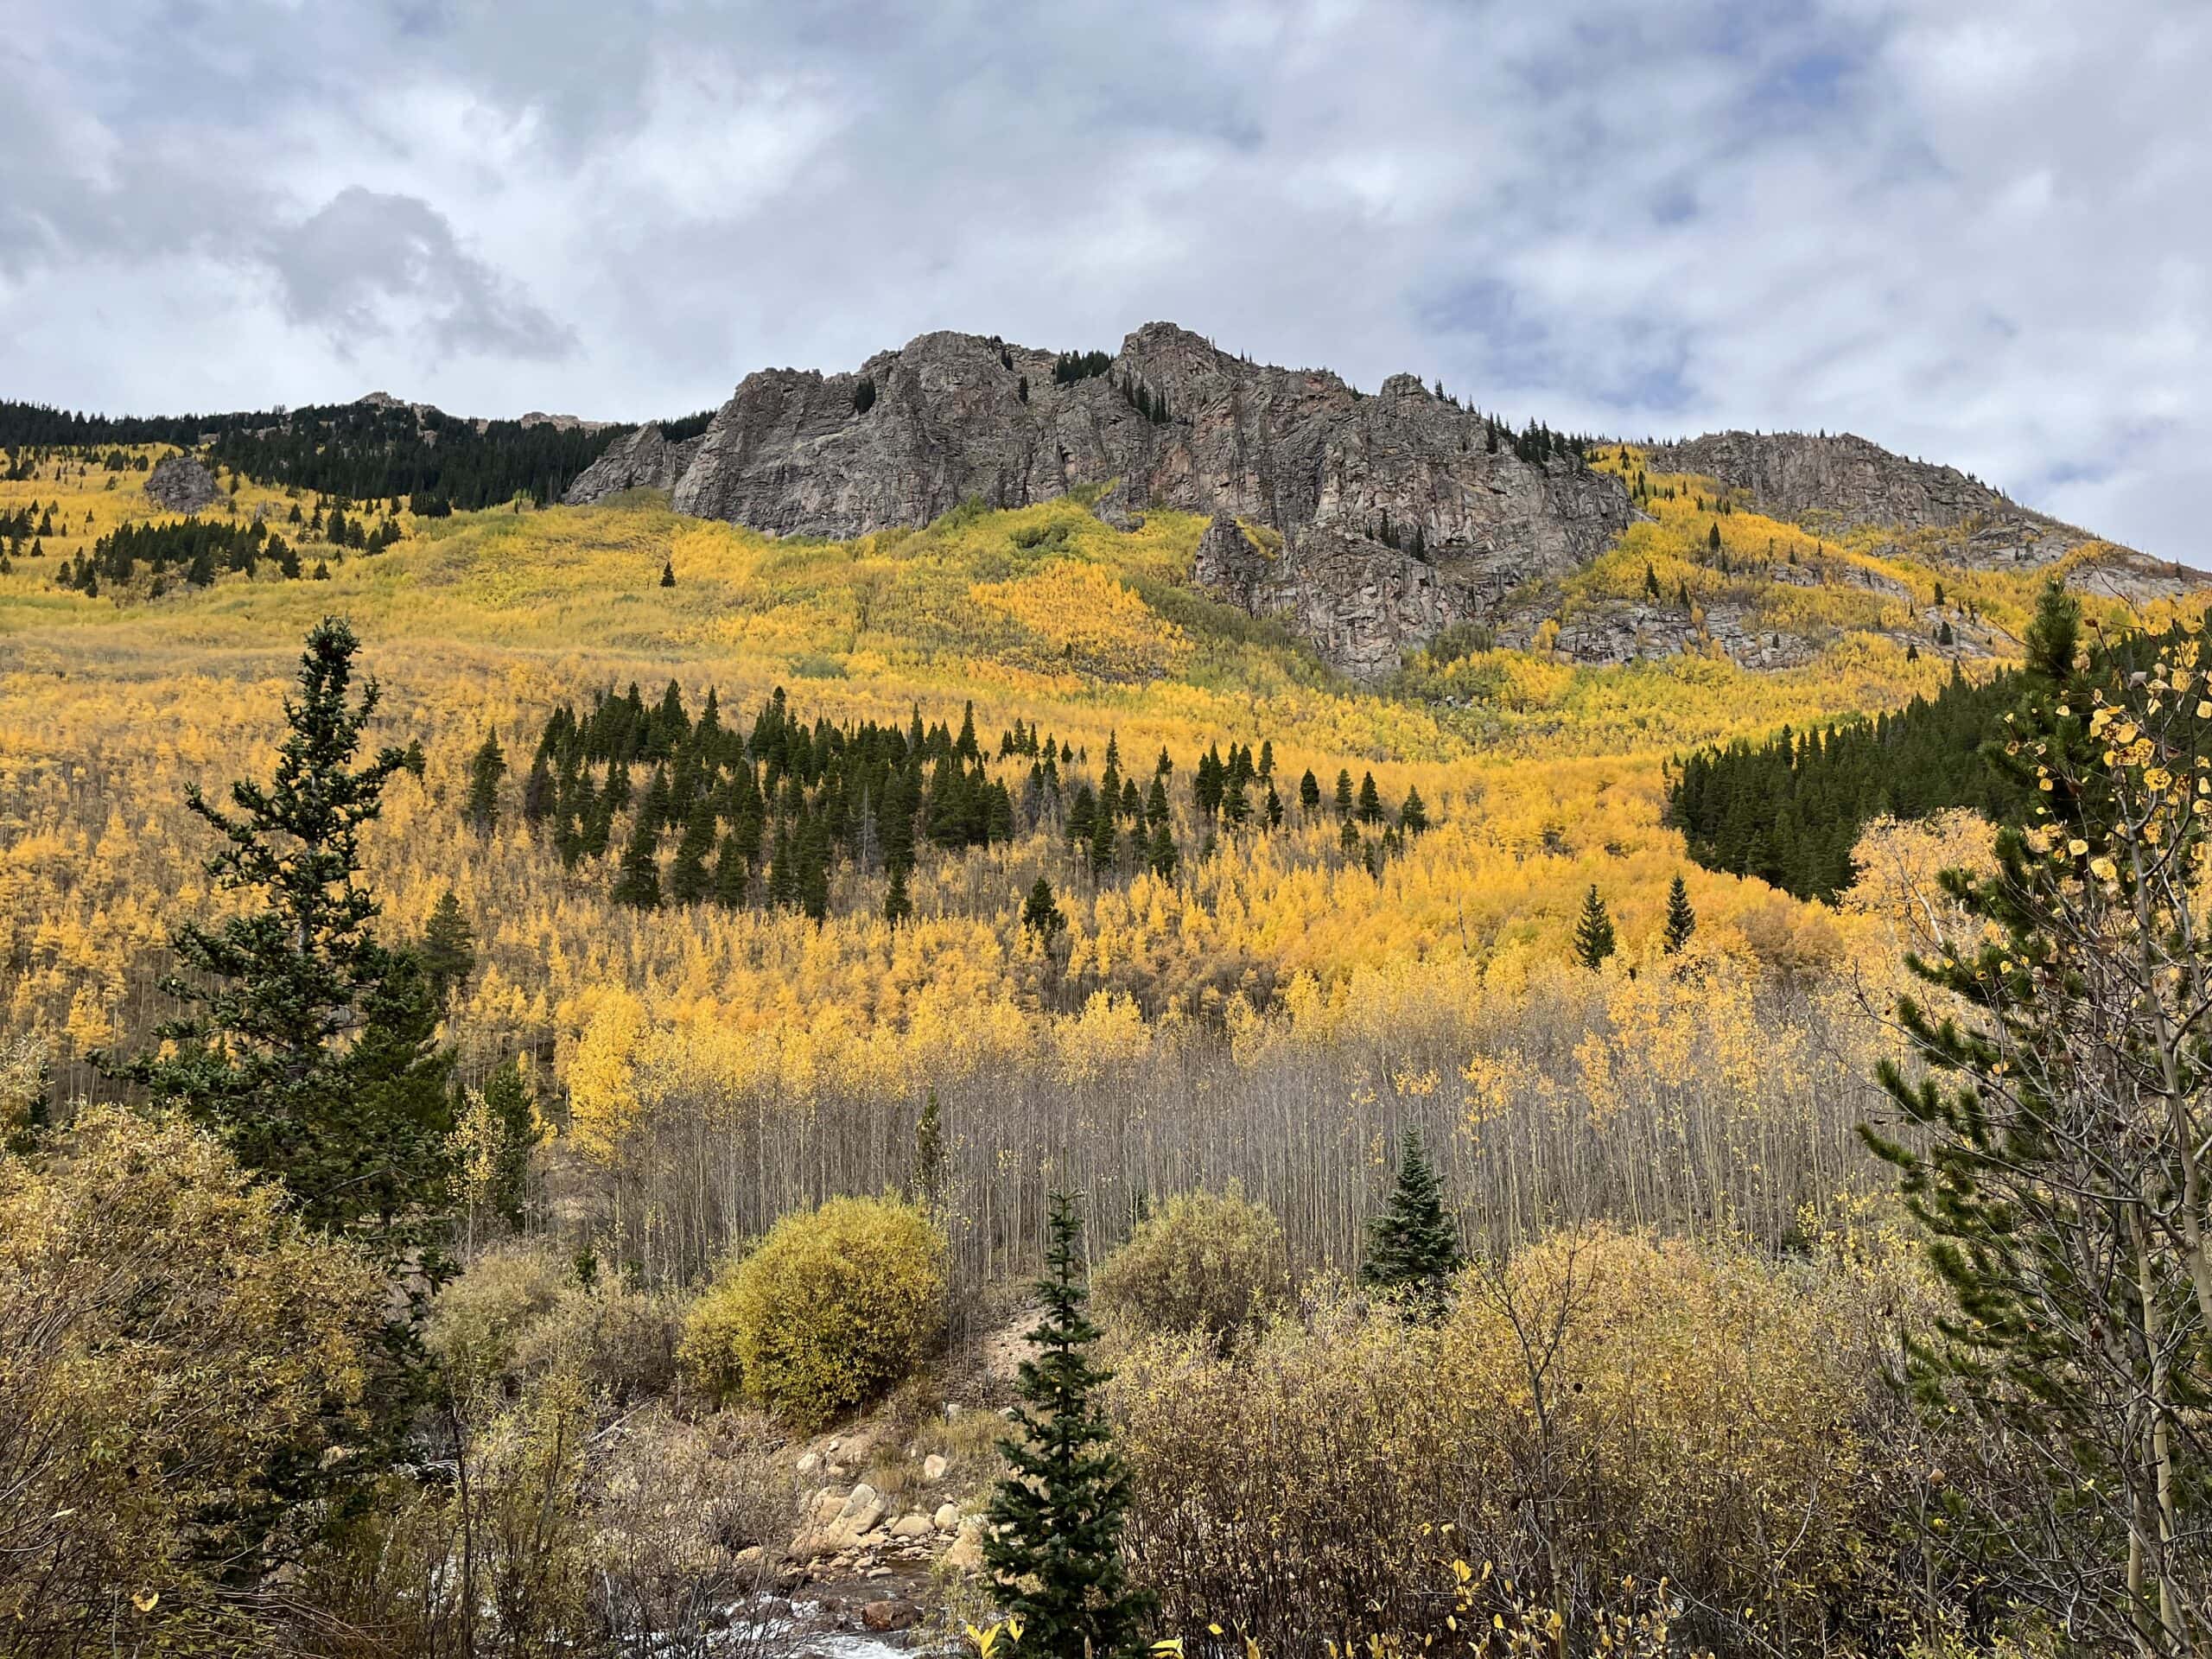 Colorado's stunning yellow aspen trees in autumn